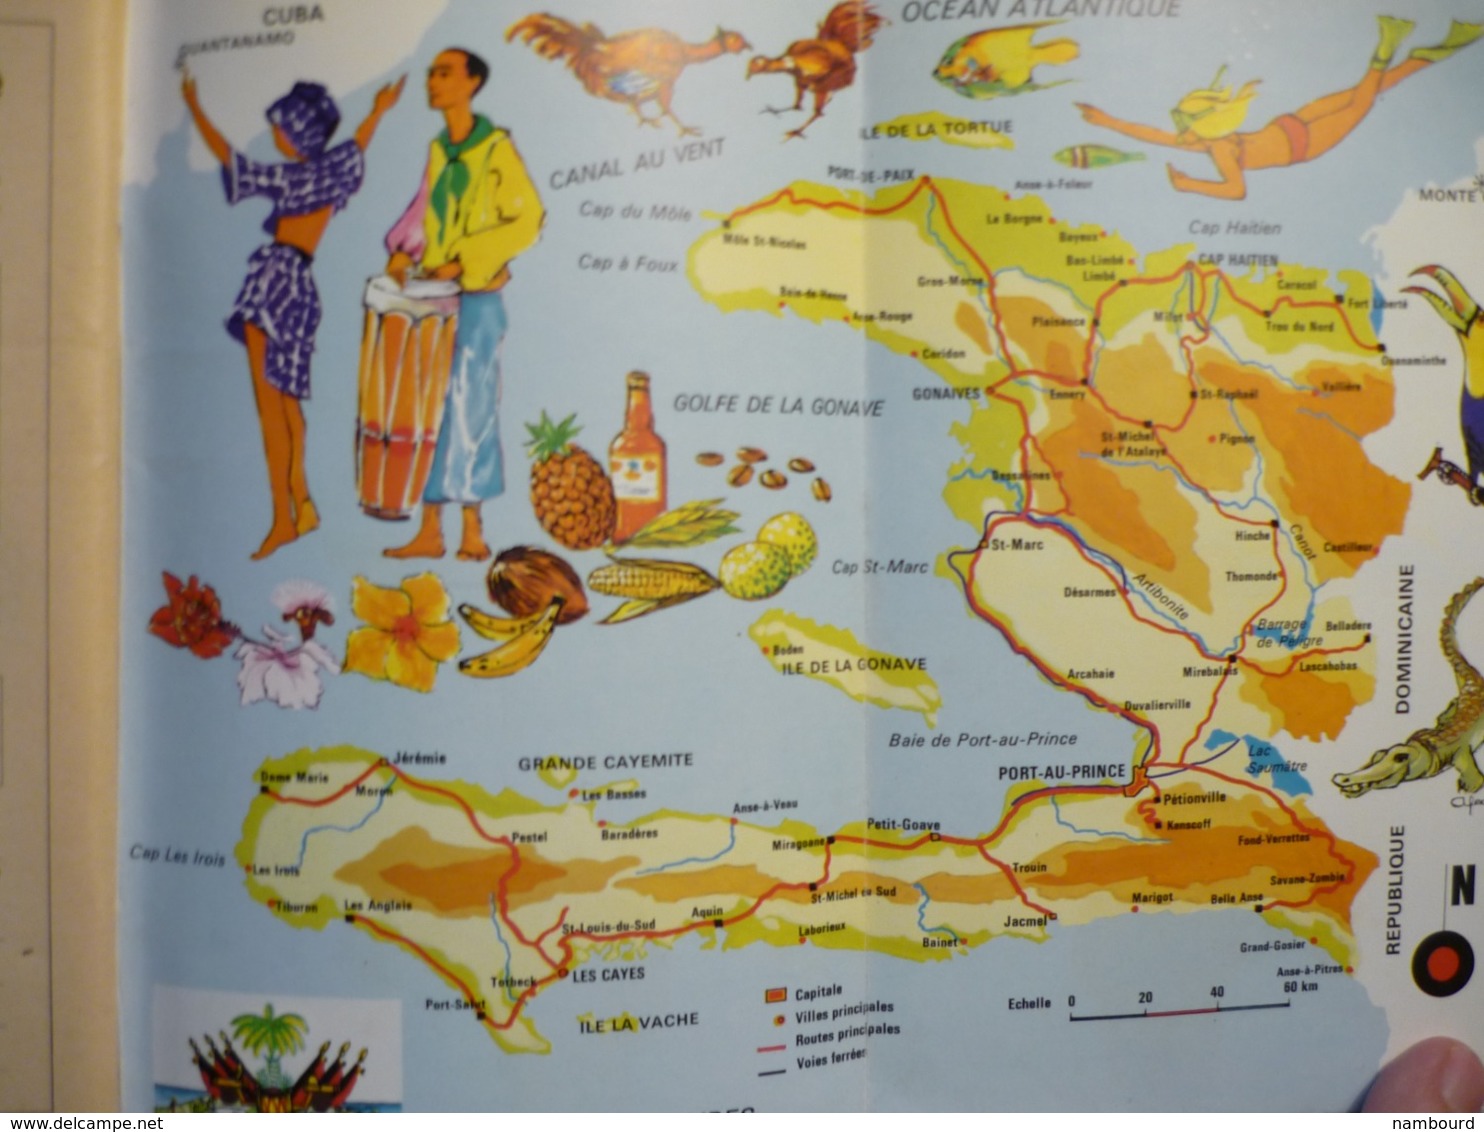 Tour du Monde Association Française de Géographie Haïti N°170 26 Novembre 1973